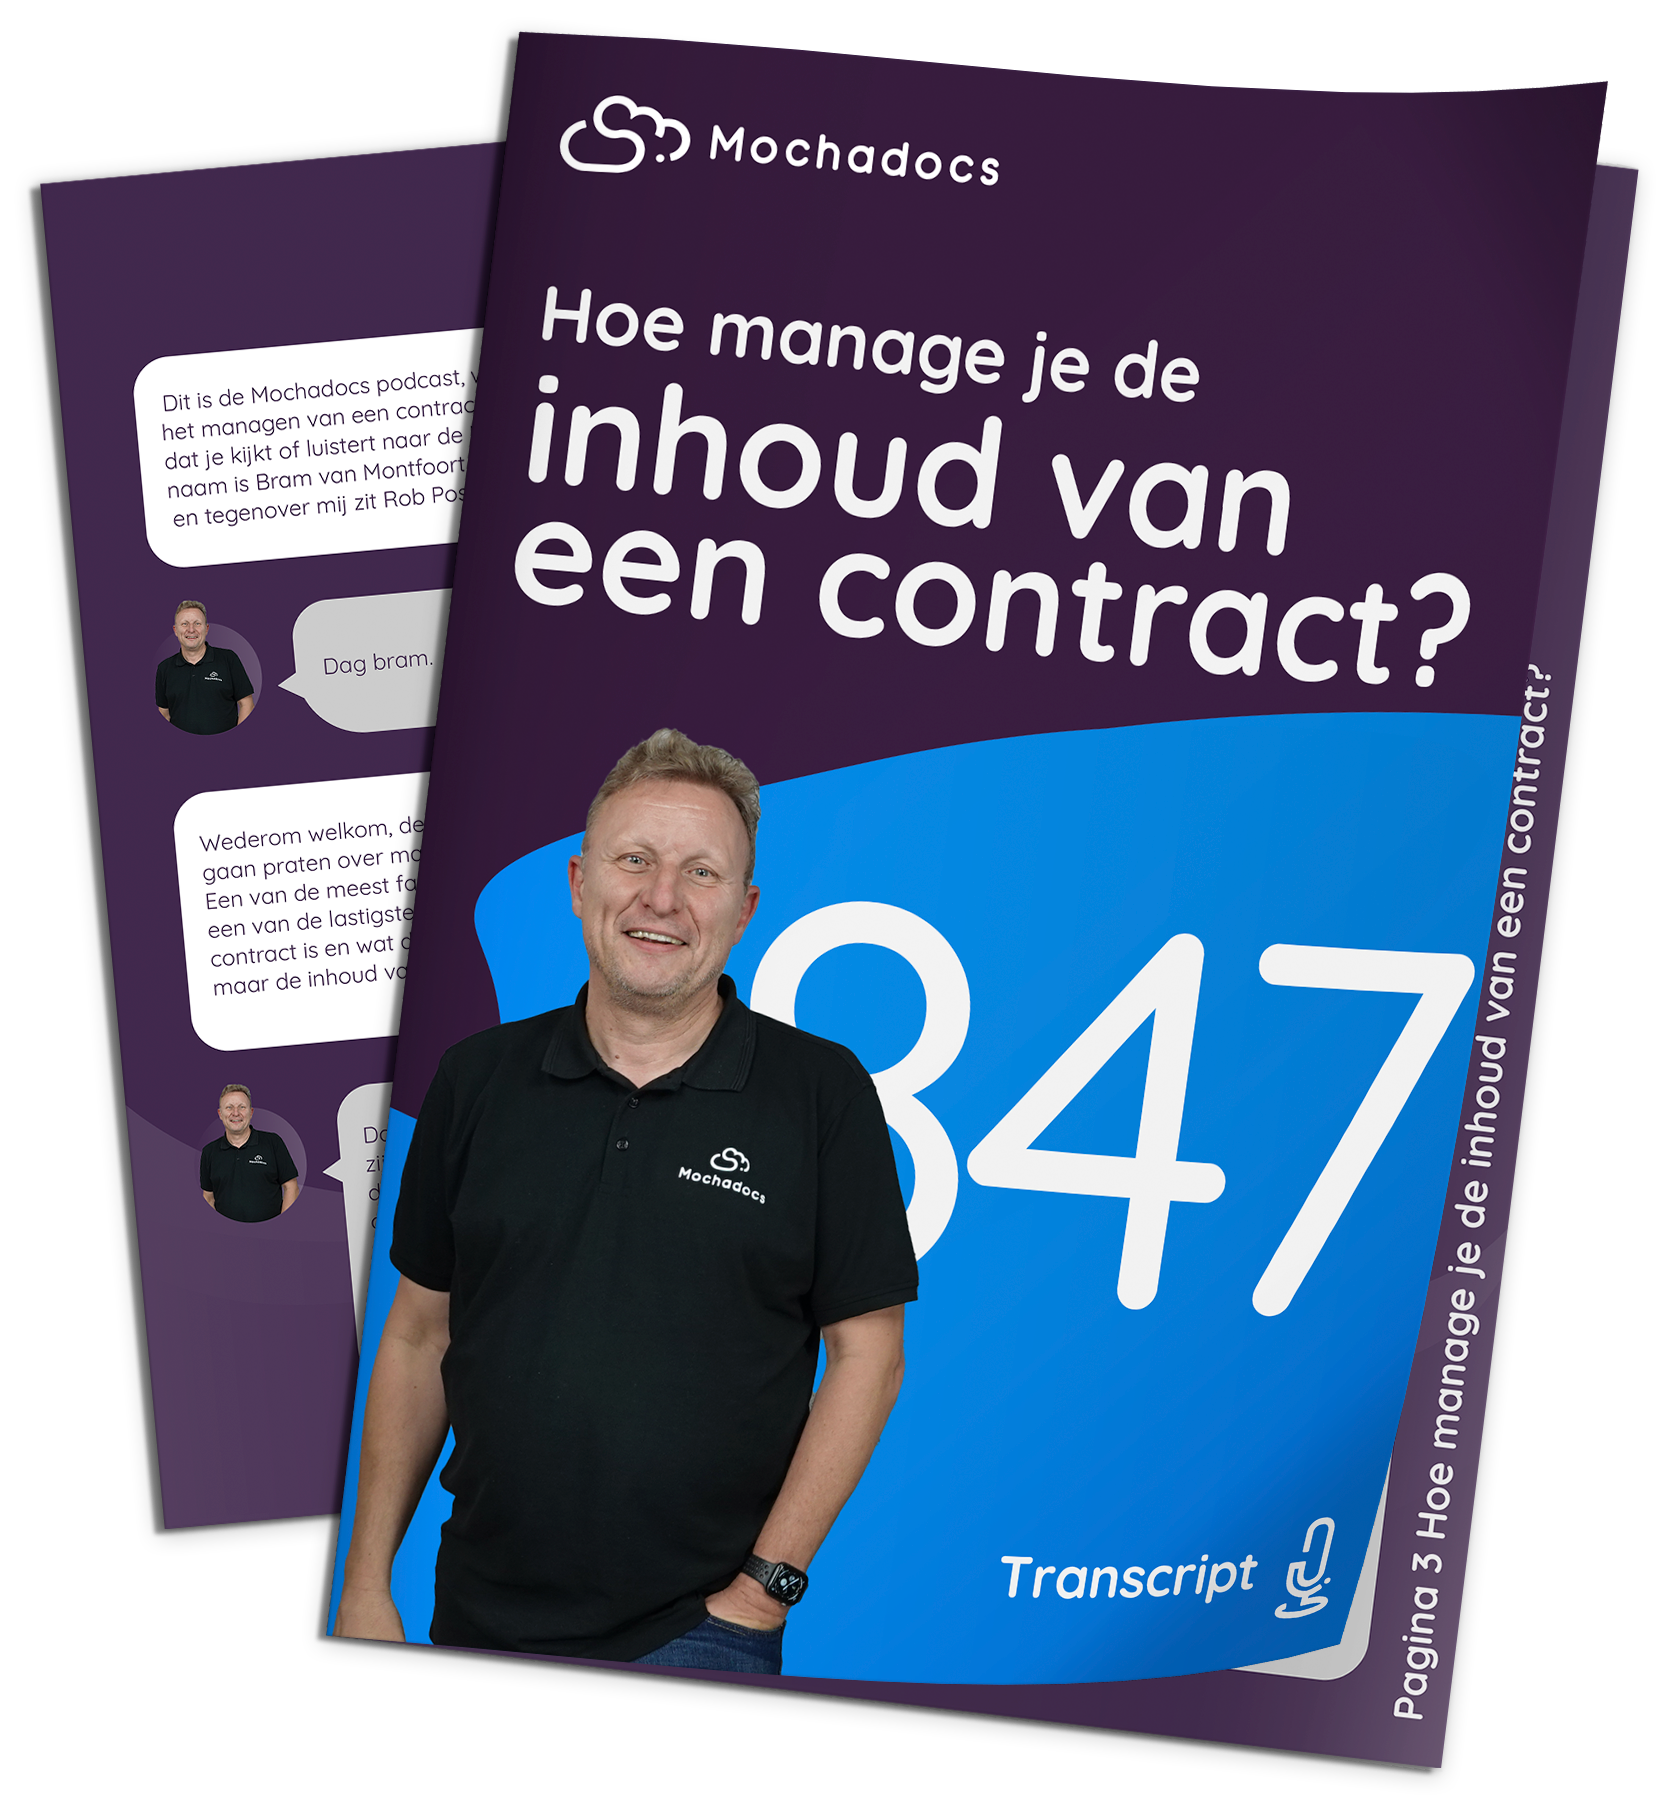 Mochadocs - Contract Management - Transcript - Hoe manage je de inhoud van een contract?